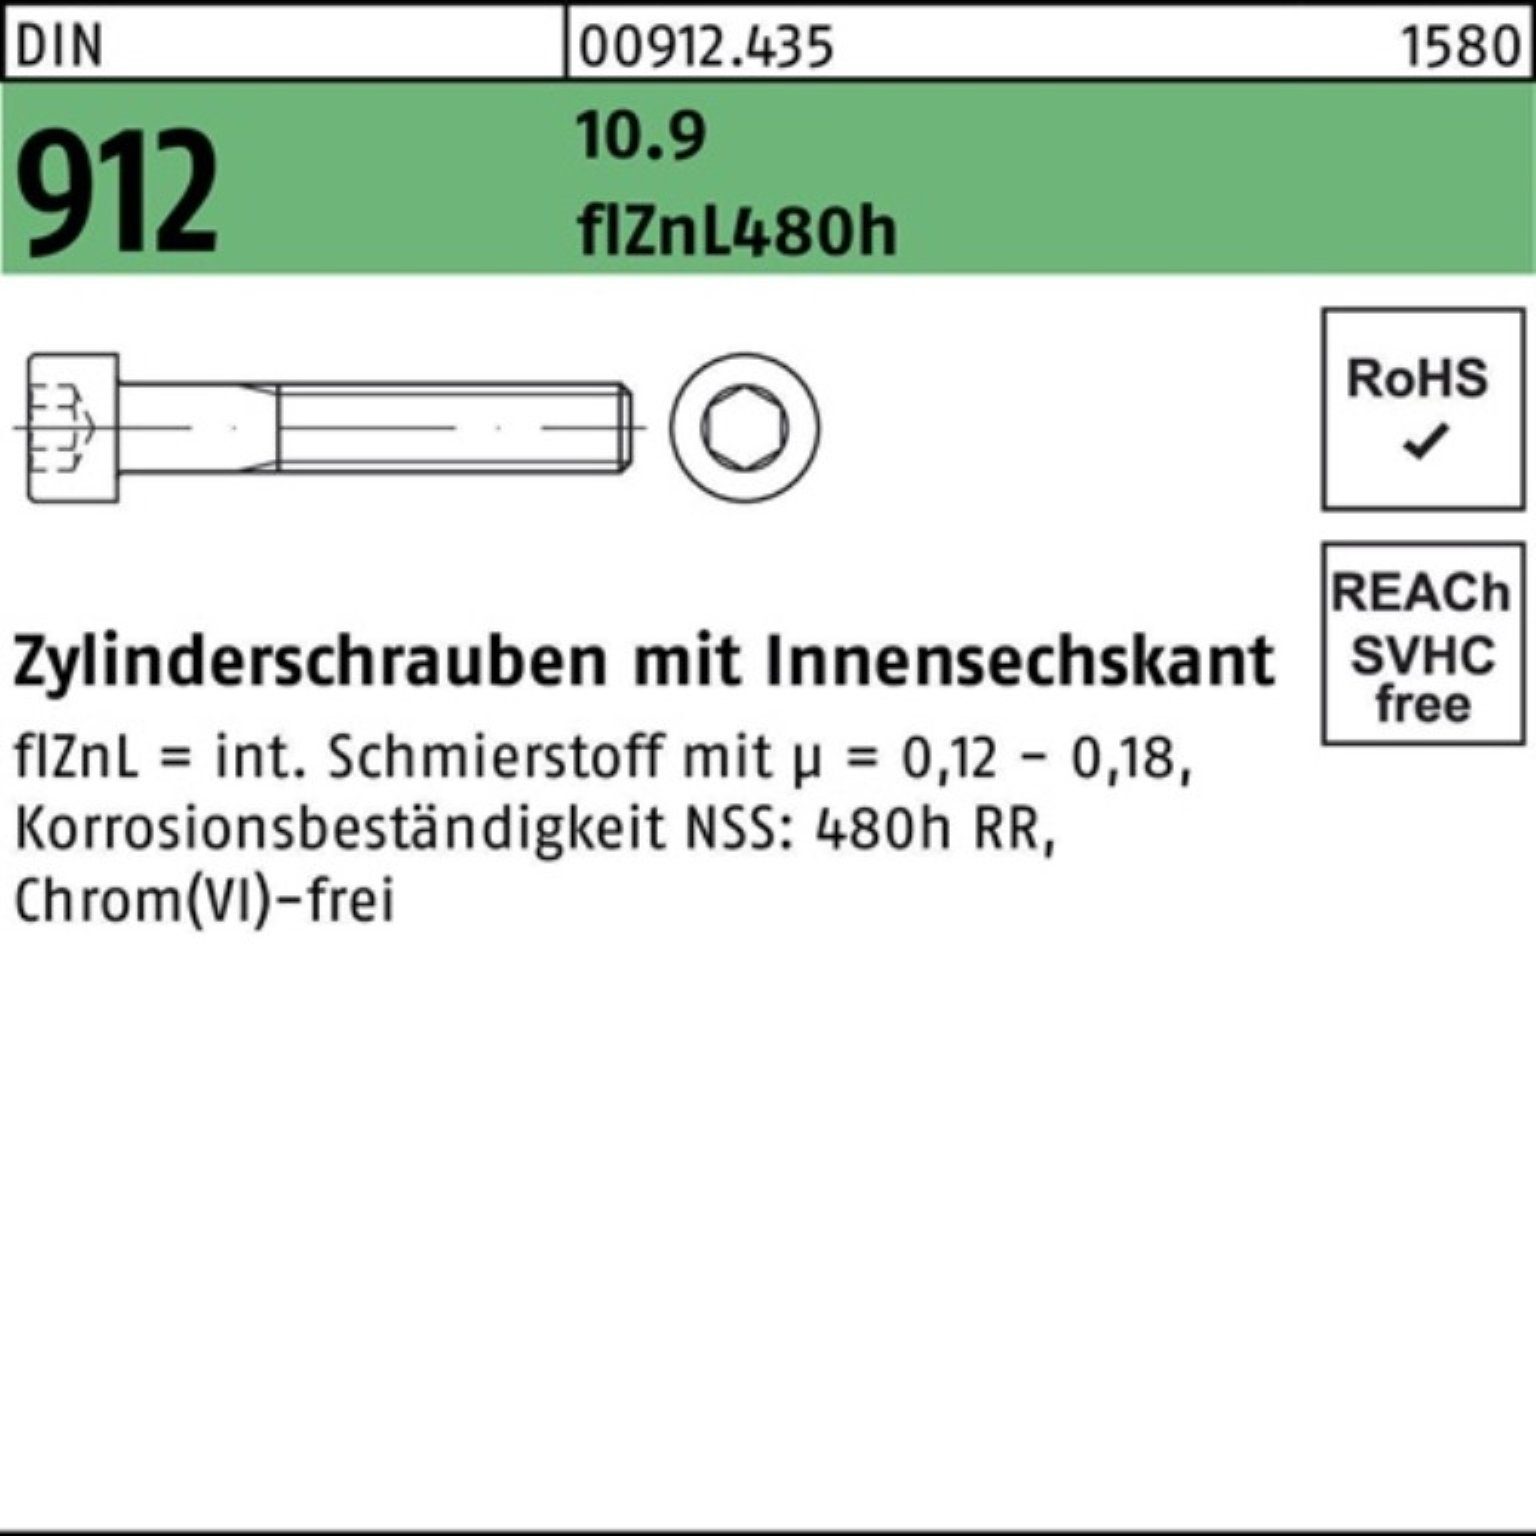 Zylinderschraube DIN Zylinderschraube Innen-6kt 912 200er Reyher 10.9 flZnL/nc/x/x Pack M8x16